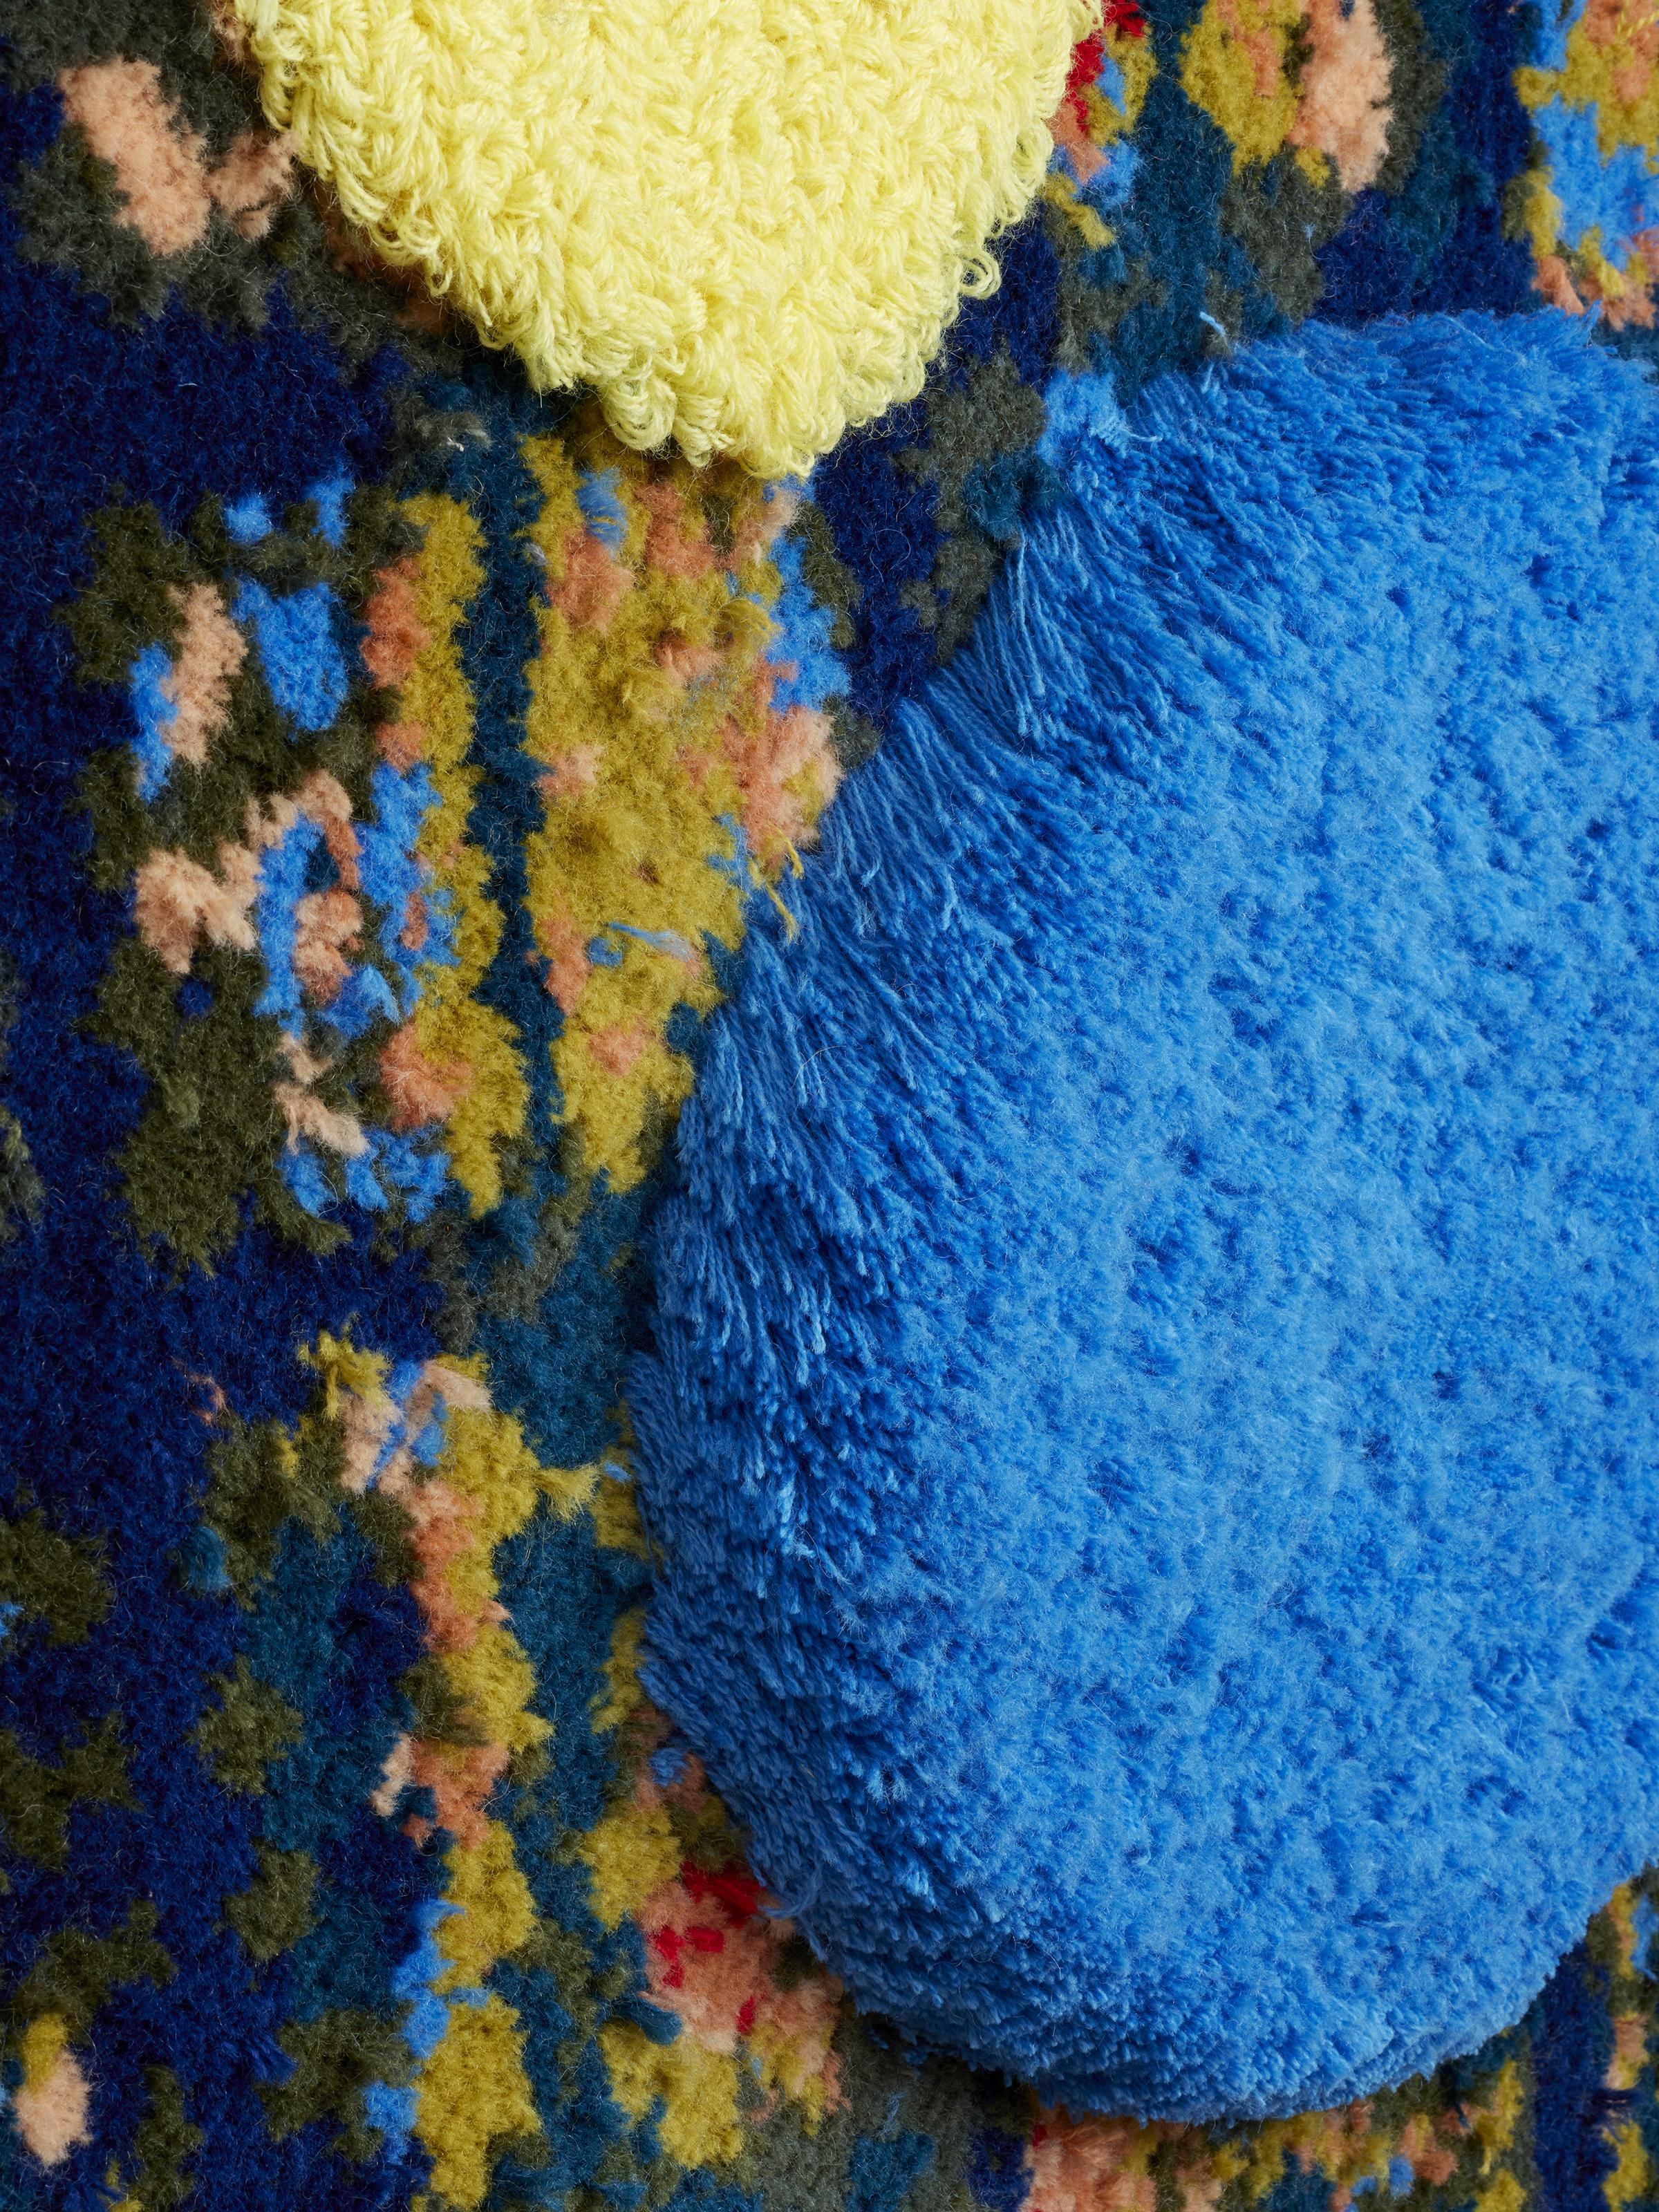 Diese abstrakte Tuftingarbeit zeigt Farbtöne in Gelb, Blau, Rot und Grün.

Trish Andersen lässt sich von der Arbeit von Shelia Hicks, Cy Twombly, Judith Scott und Nick Cave inspirieren.

Die in Savannah lebende Künstlerin Trish Andersen hat mit